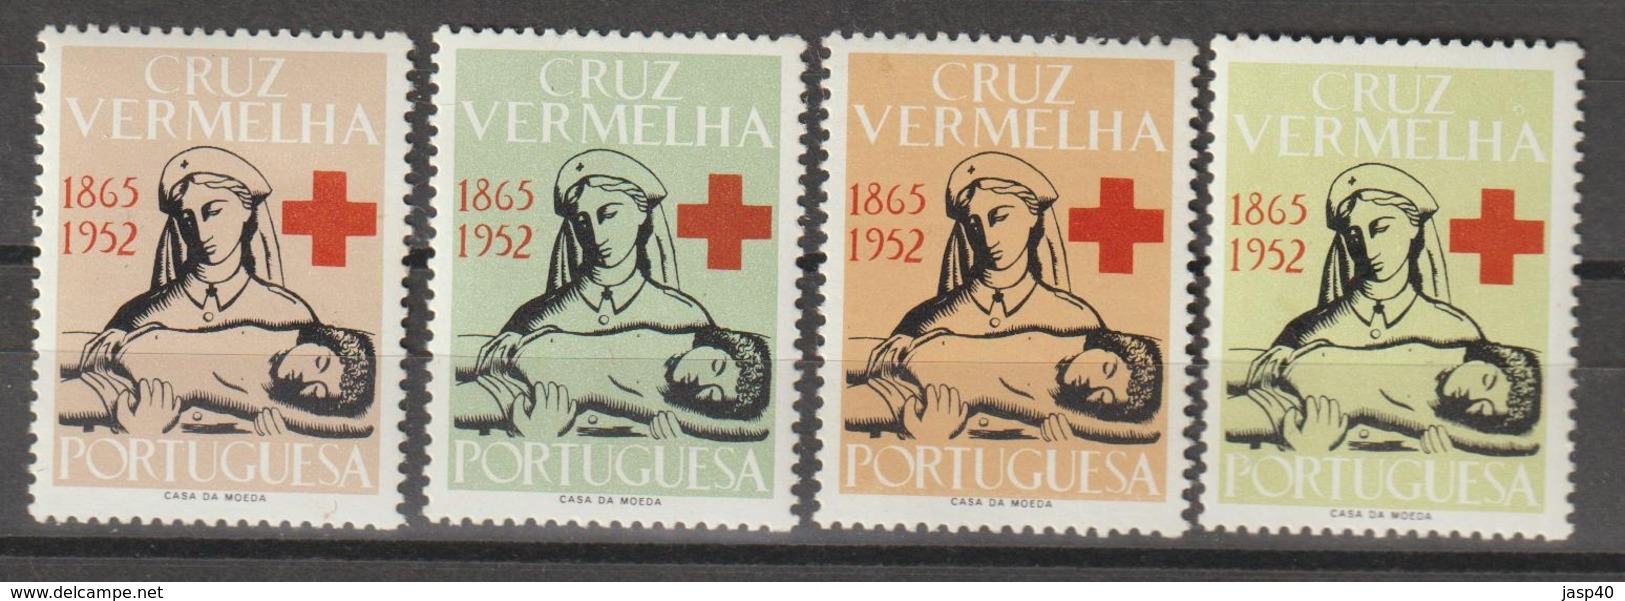 PORTUGAL - CRUZ VERMELHA EMISSÃO DE 1952 - Ungebraucht